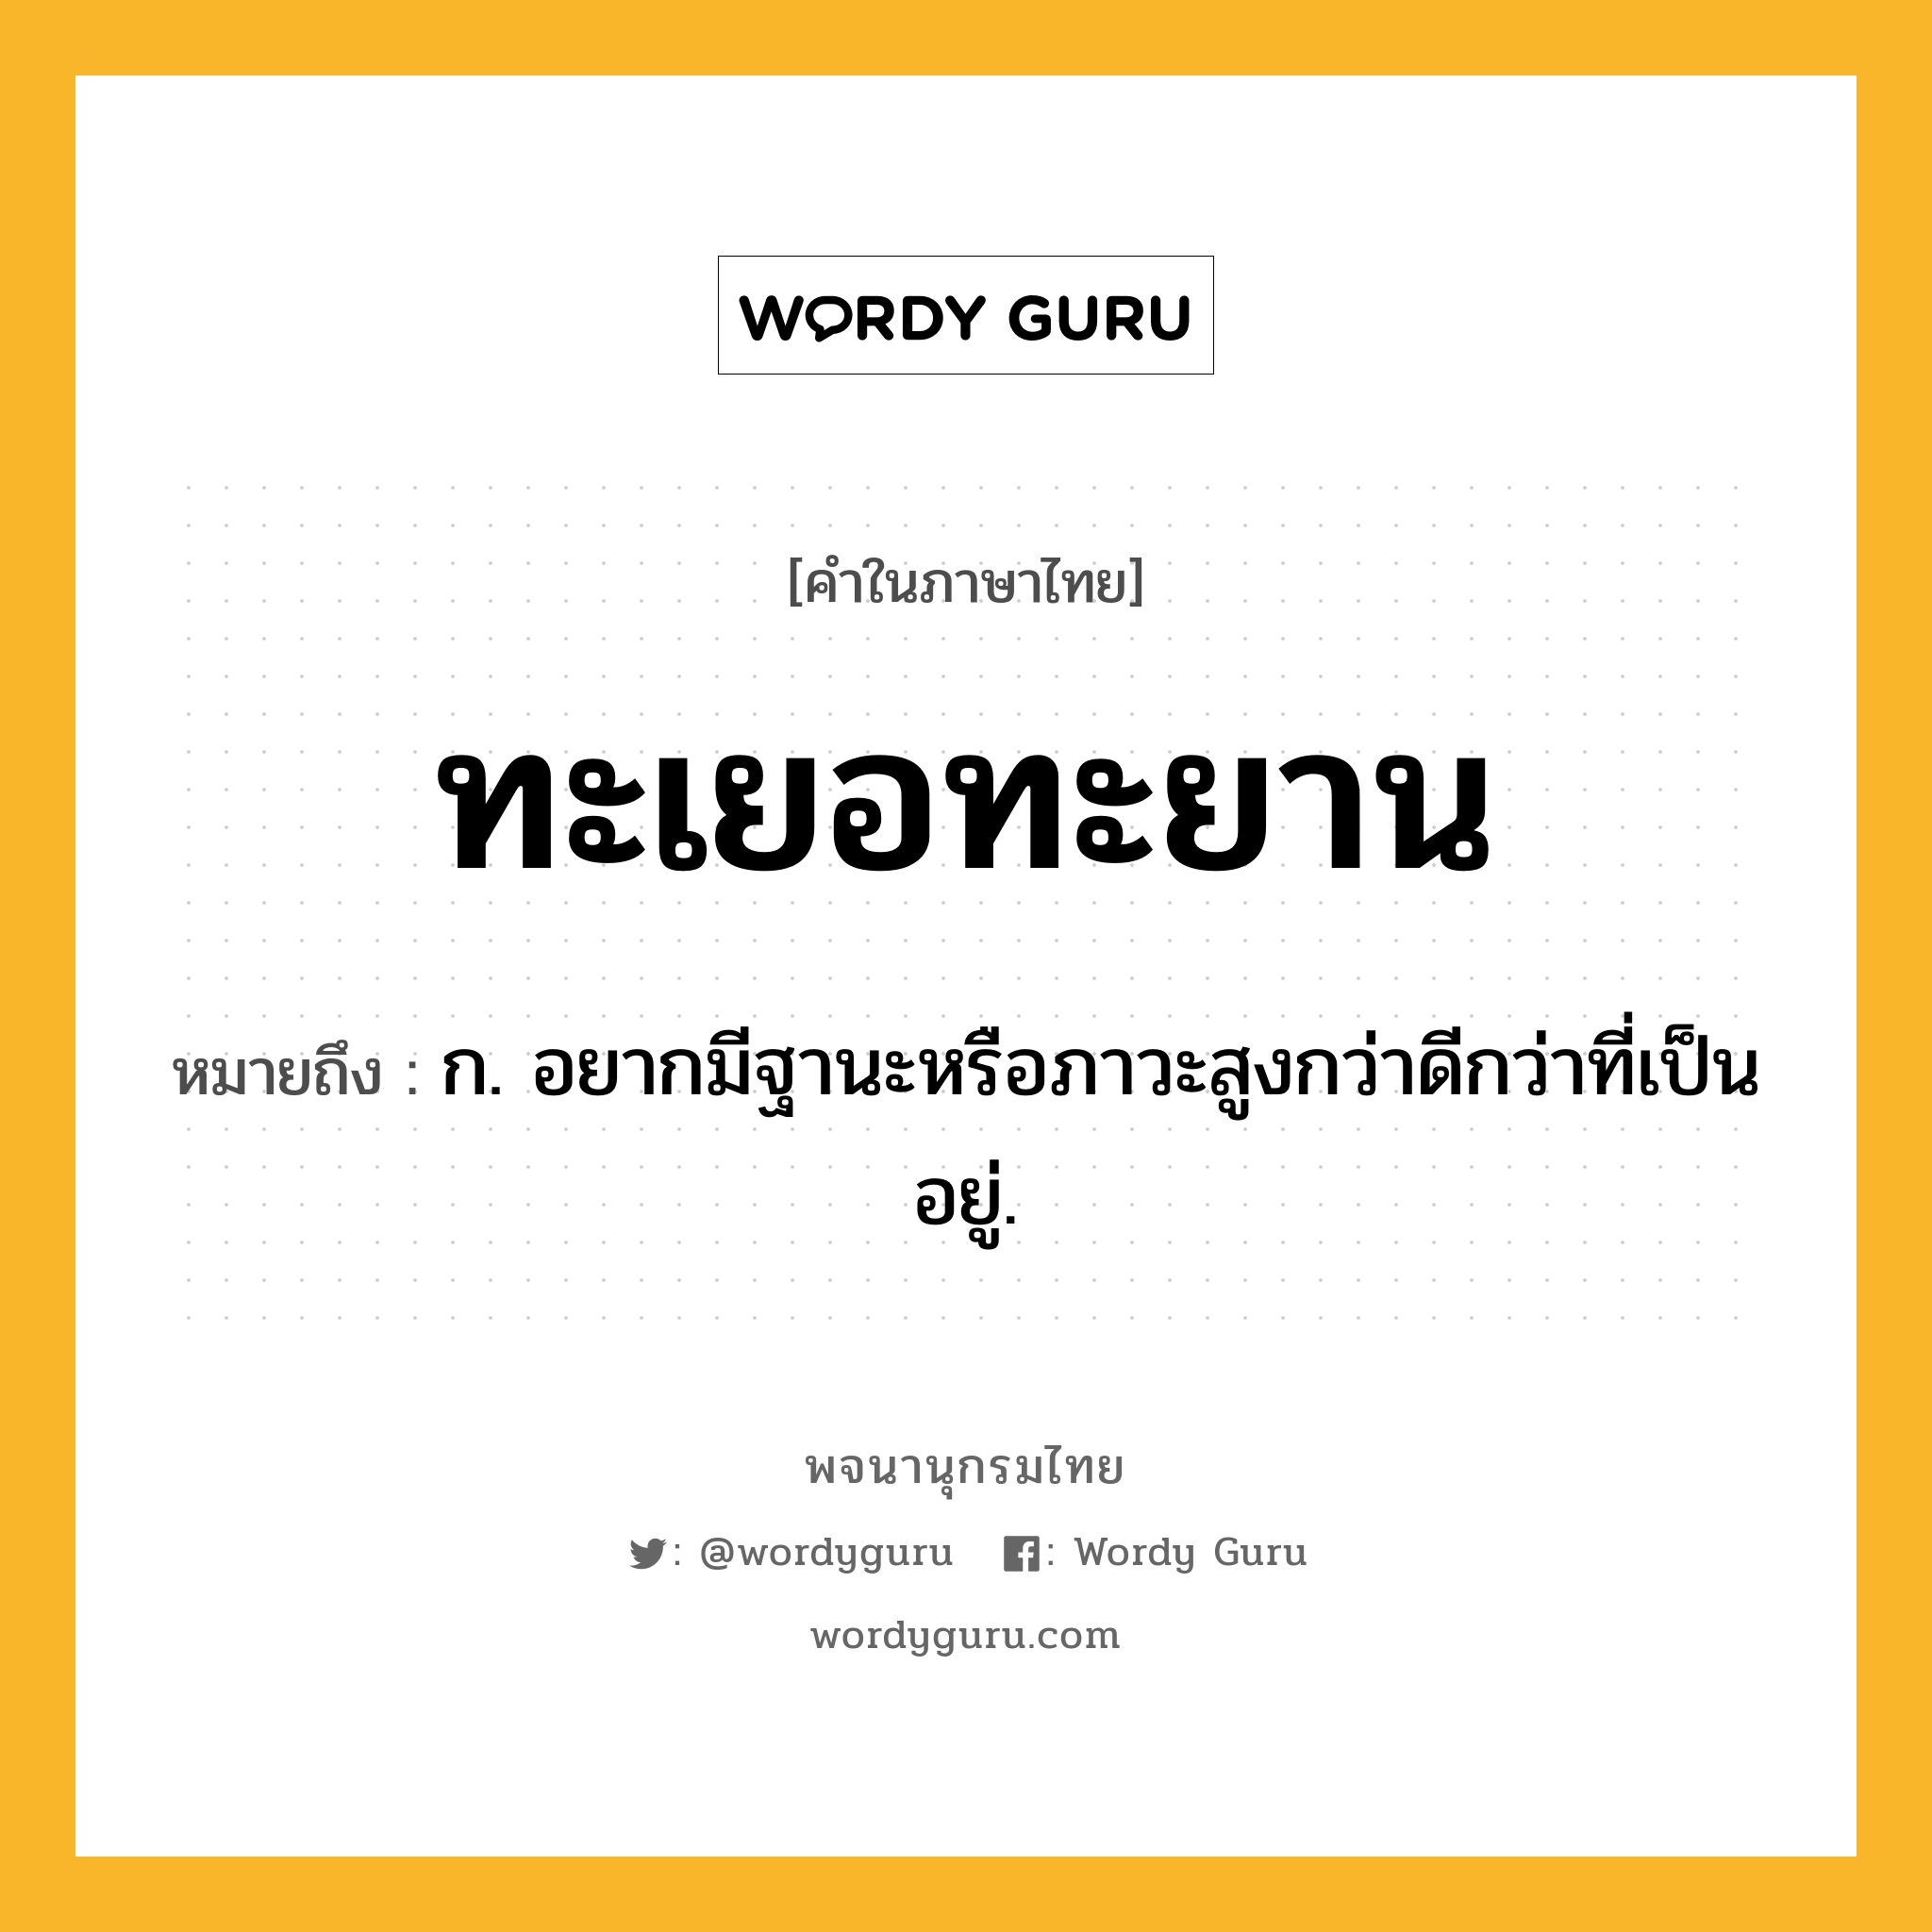 ทะเยอทะยาน ความหมาย หมายถึงอะไร?, คำในภาษาไทย ทะเยอทะยาน หมายถึง ก. อยากมีฐานะหรือภาวะสูงกว่าดีกว่าที่เป็นอยู่.